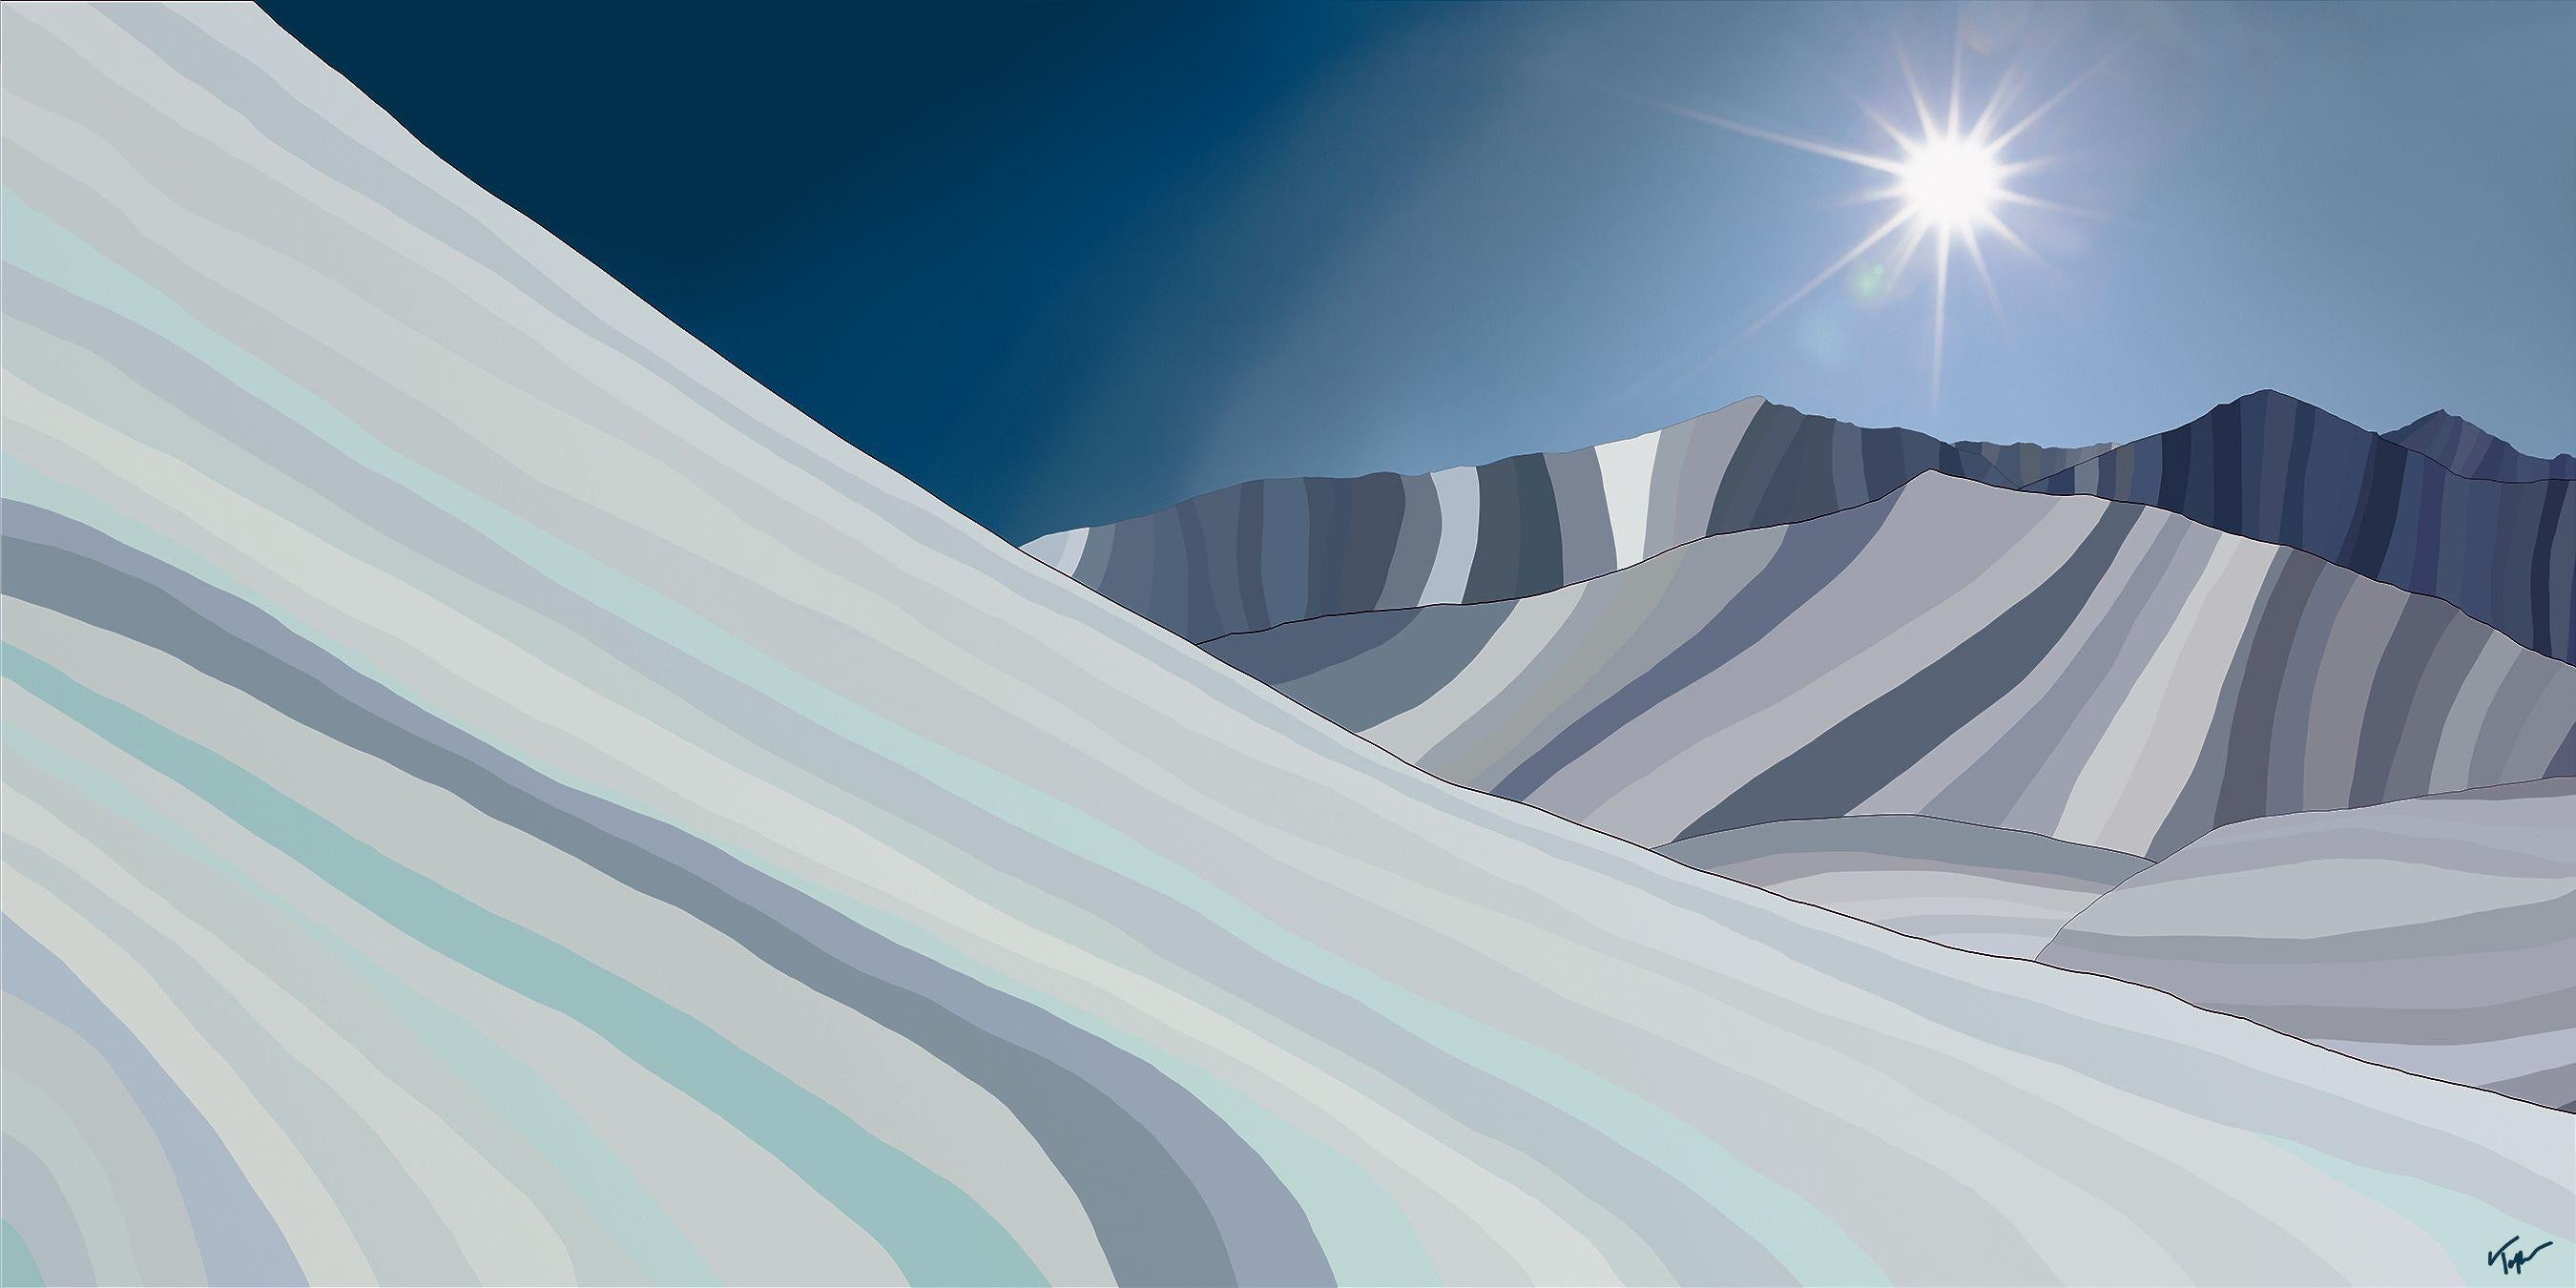 Peaks, peinture de paysage impressionniste moderne abstraite, Ski & Snow, édition limitée